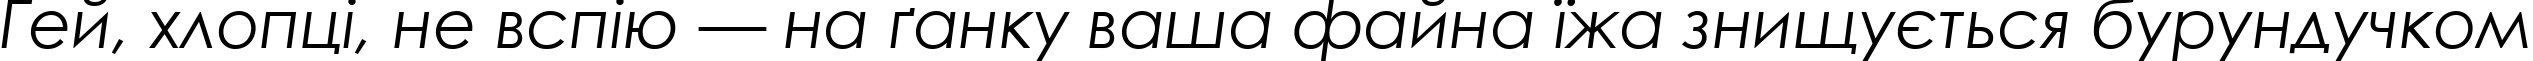 Пример написания шрифтом Century Gothic Italic текста на украинском